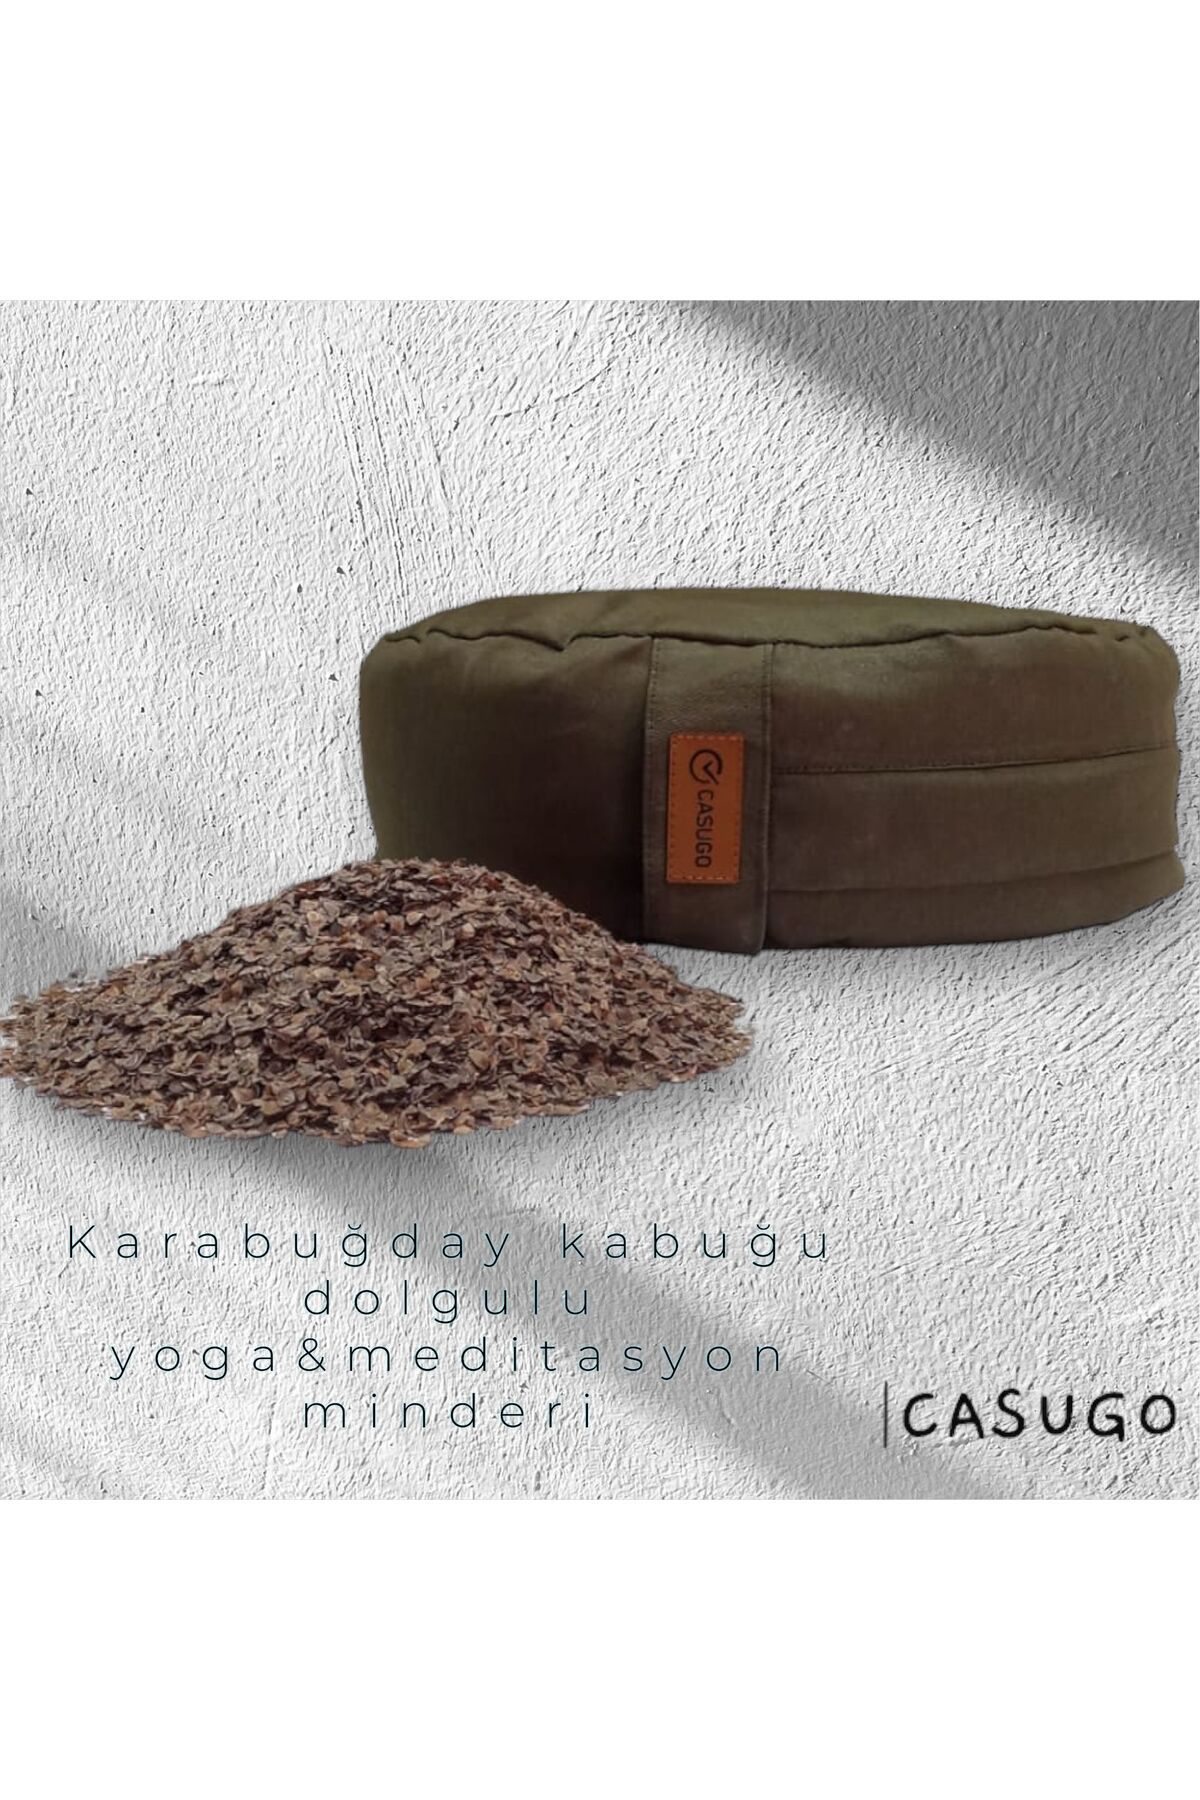 CASUGO Yoga Minderi Meditasyon Minderi - Karabuğday Kabuğu Dolgulu Haki Renk